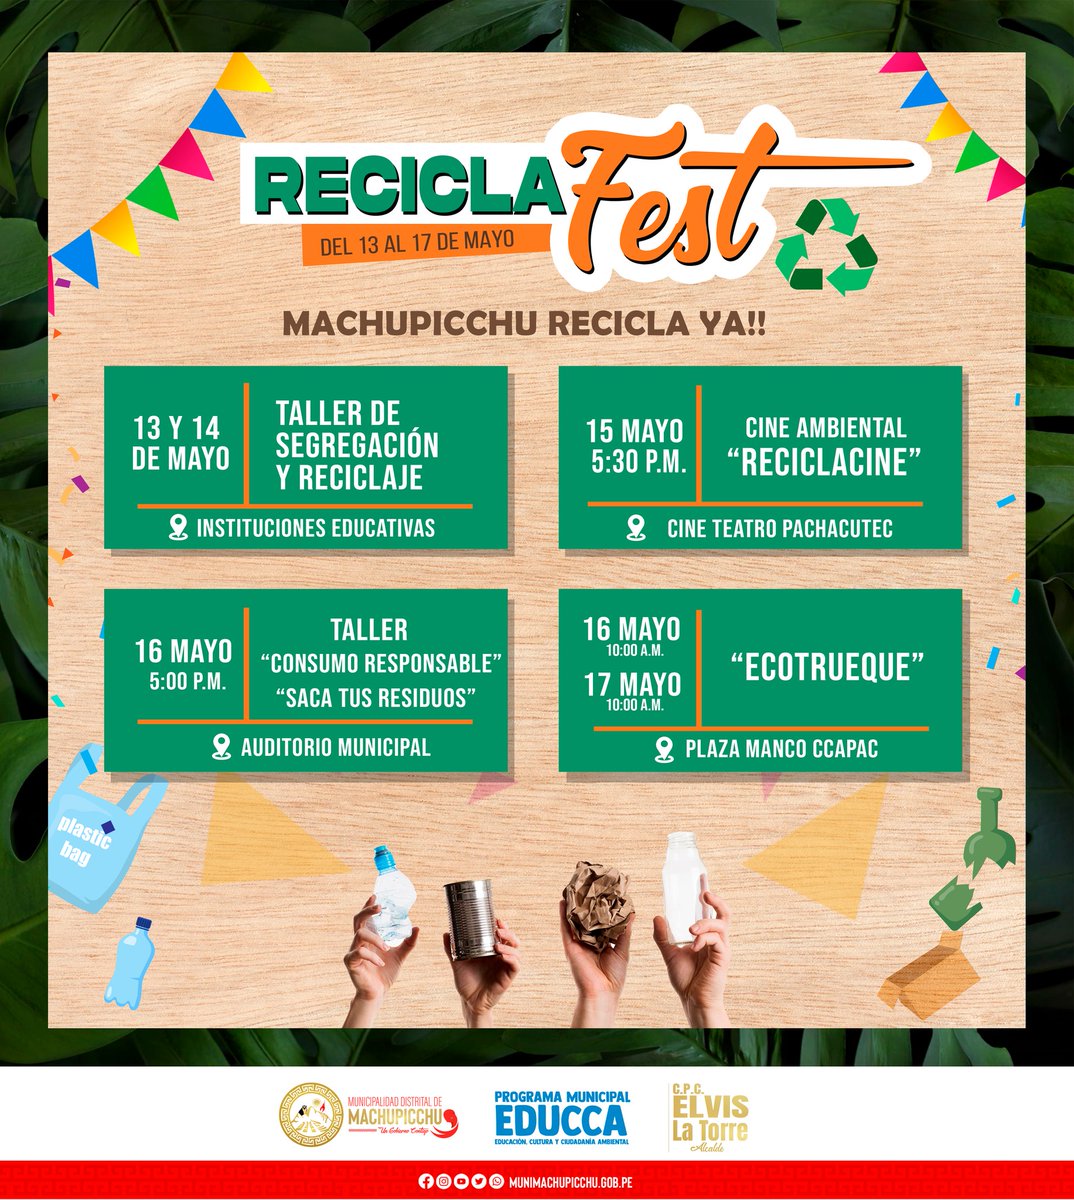 ¡GRAN RECICLAFEST MACHUPICCHU RECICLA YA!
Celebra con nosotros El 'Día Mundial del Reciclaje' siendo parte de nuestro festival y de las diferentes actividades de concientización ambiental.
#municipalidaddemachupicchu
#UnGobiernoContigo